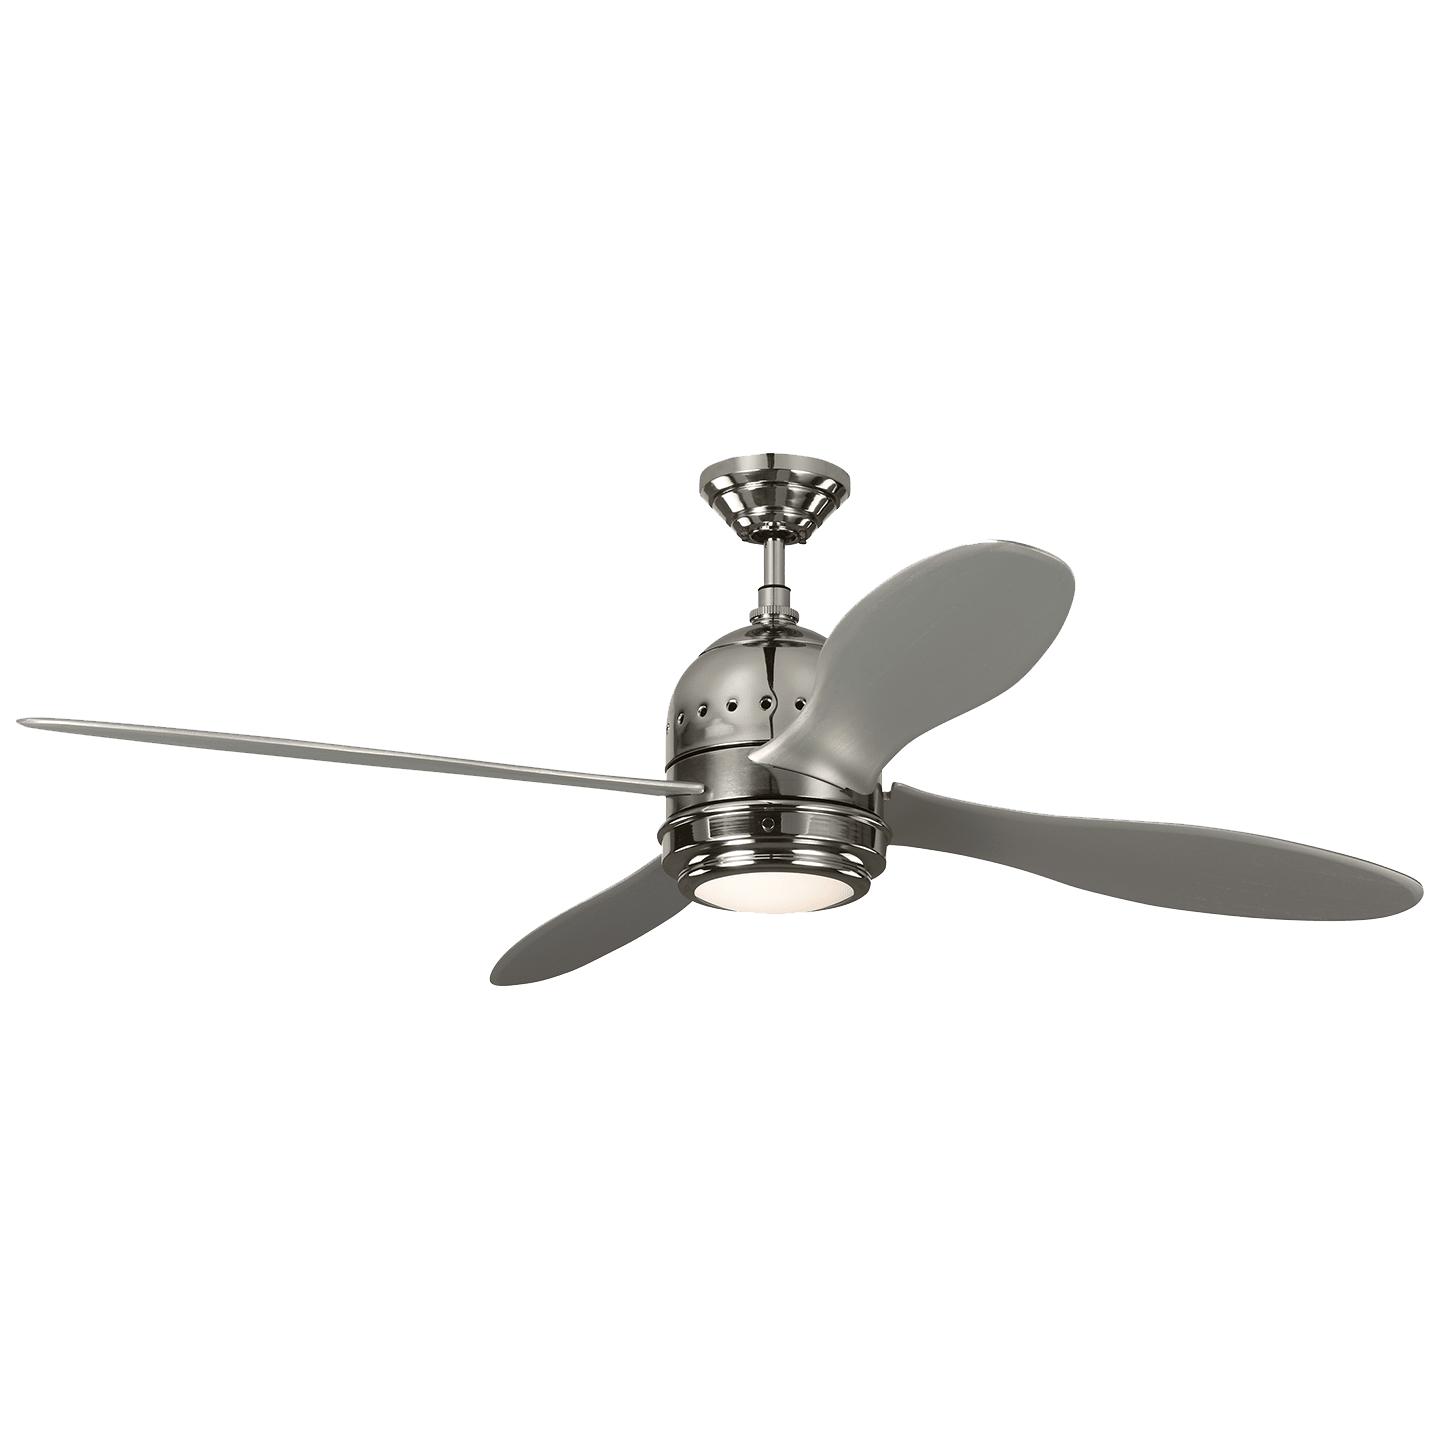 Купить Потолочный вентилятор Metrograph 56" Ceiling Fan в интернет-магазине roooms.ru